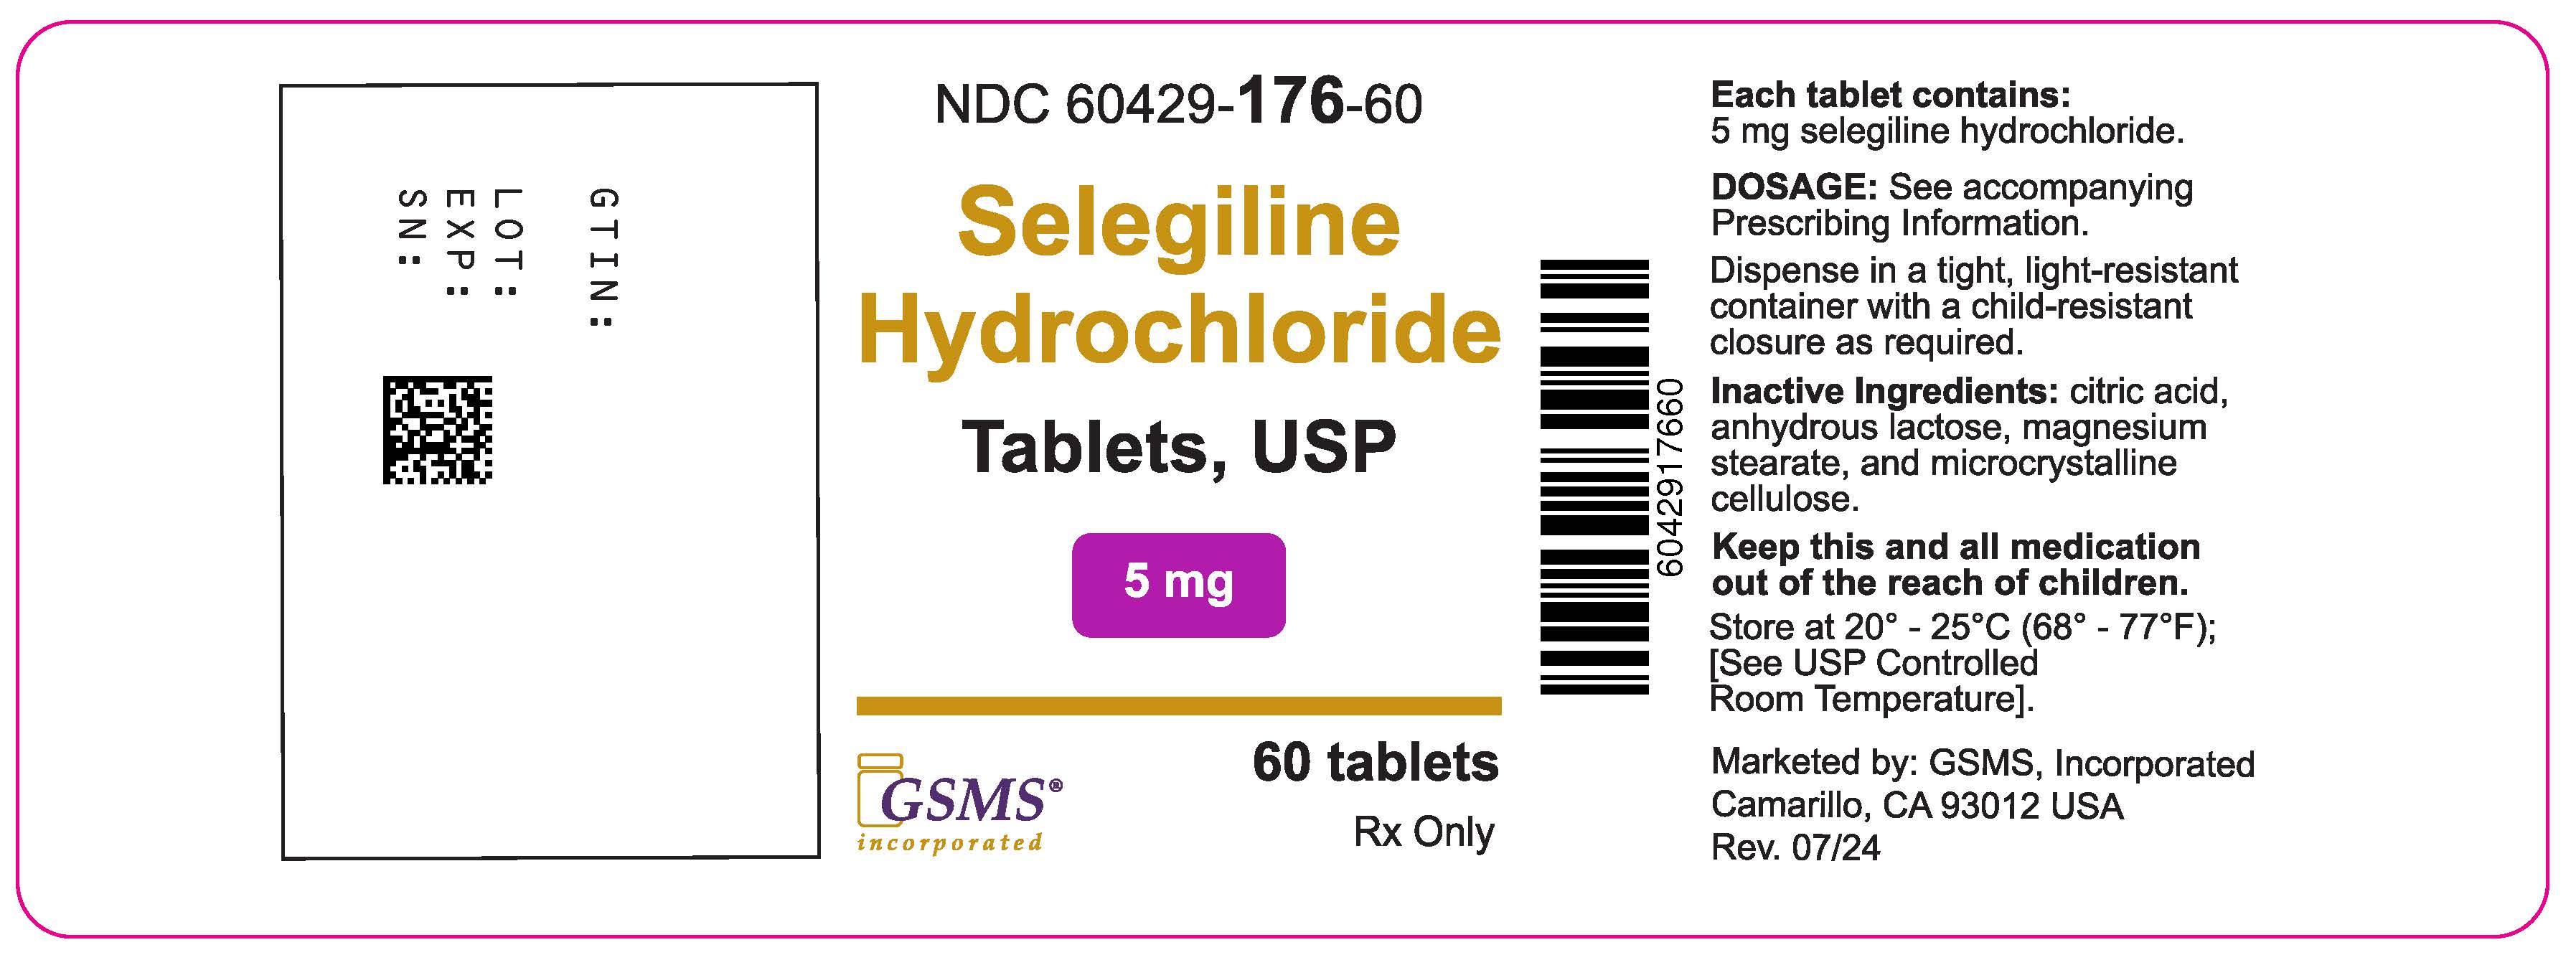 60429-176-60OL - Selegiline 5 mg - Rev. 0724.jpg